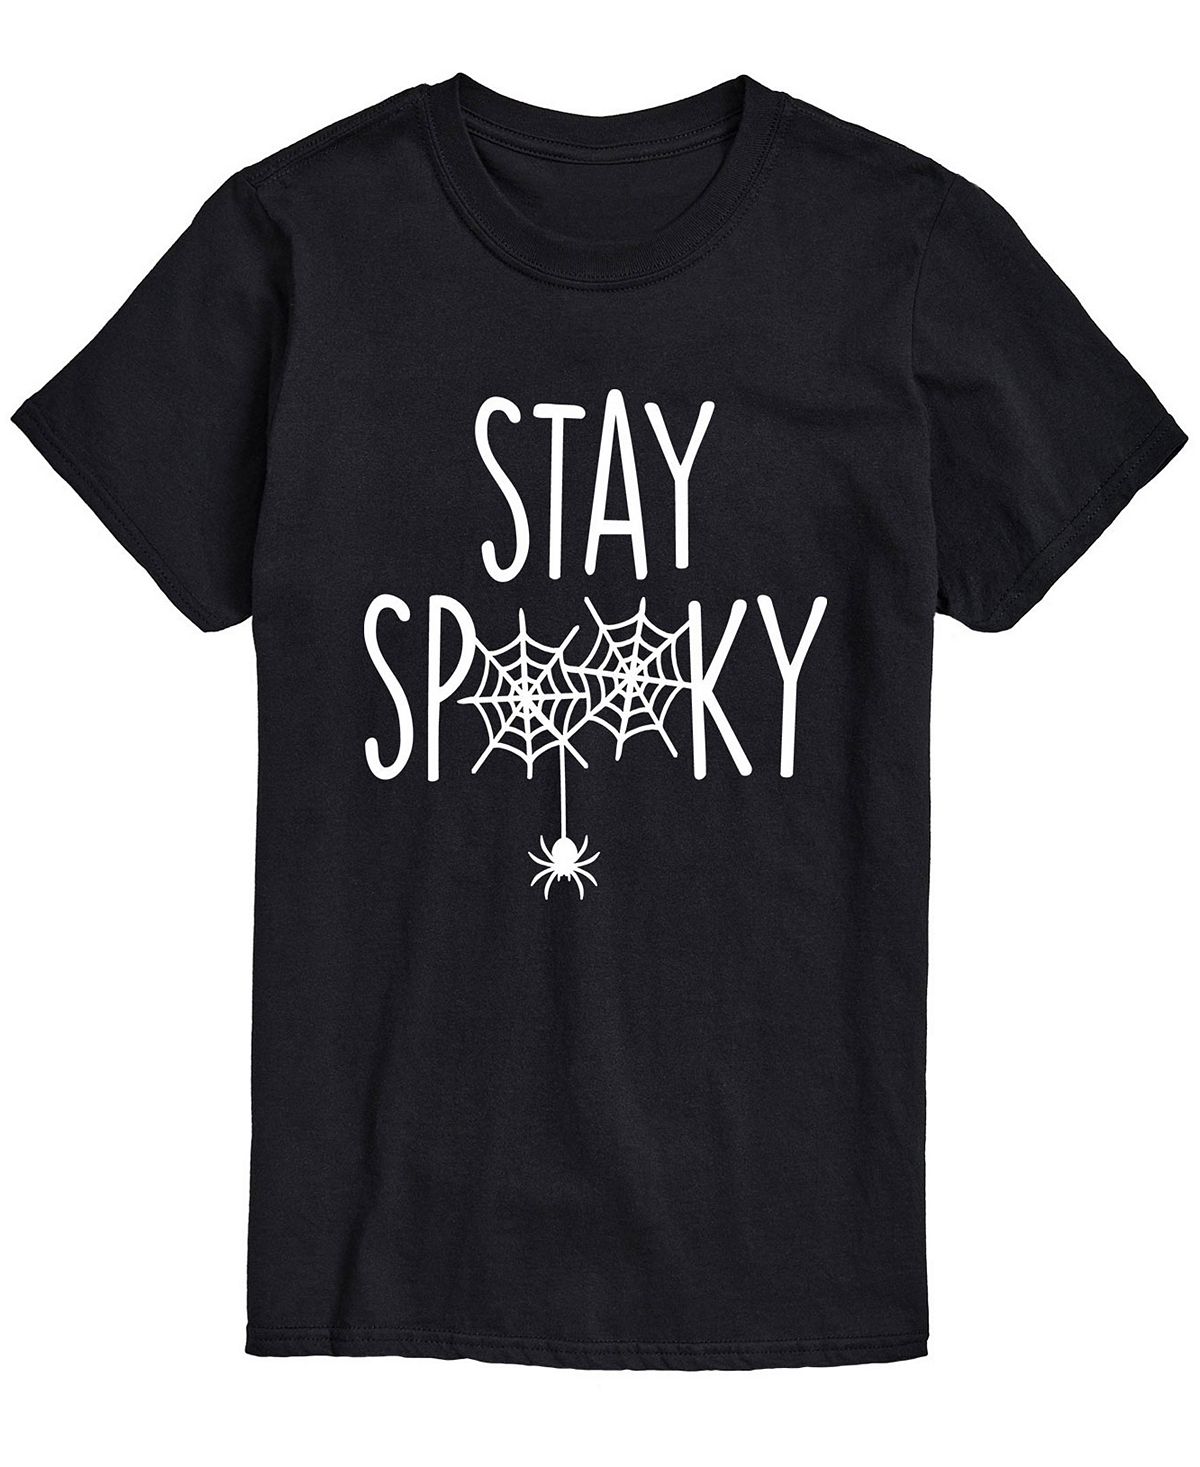 цена Мужская футболка классического кроя stay spooky AIRWAVES, черный